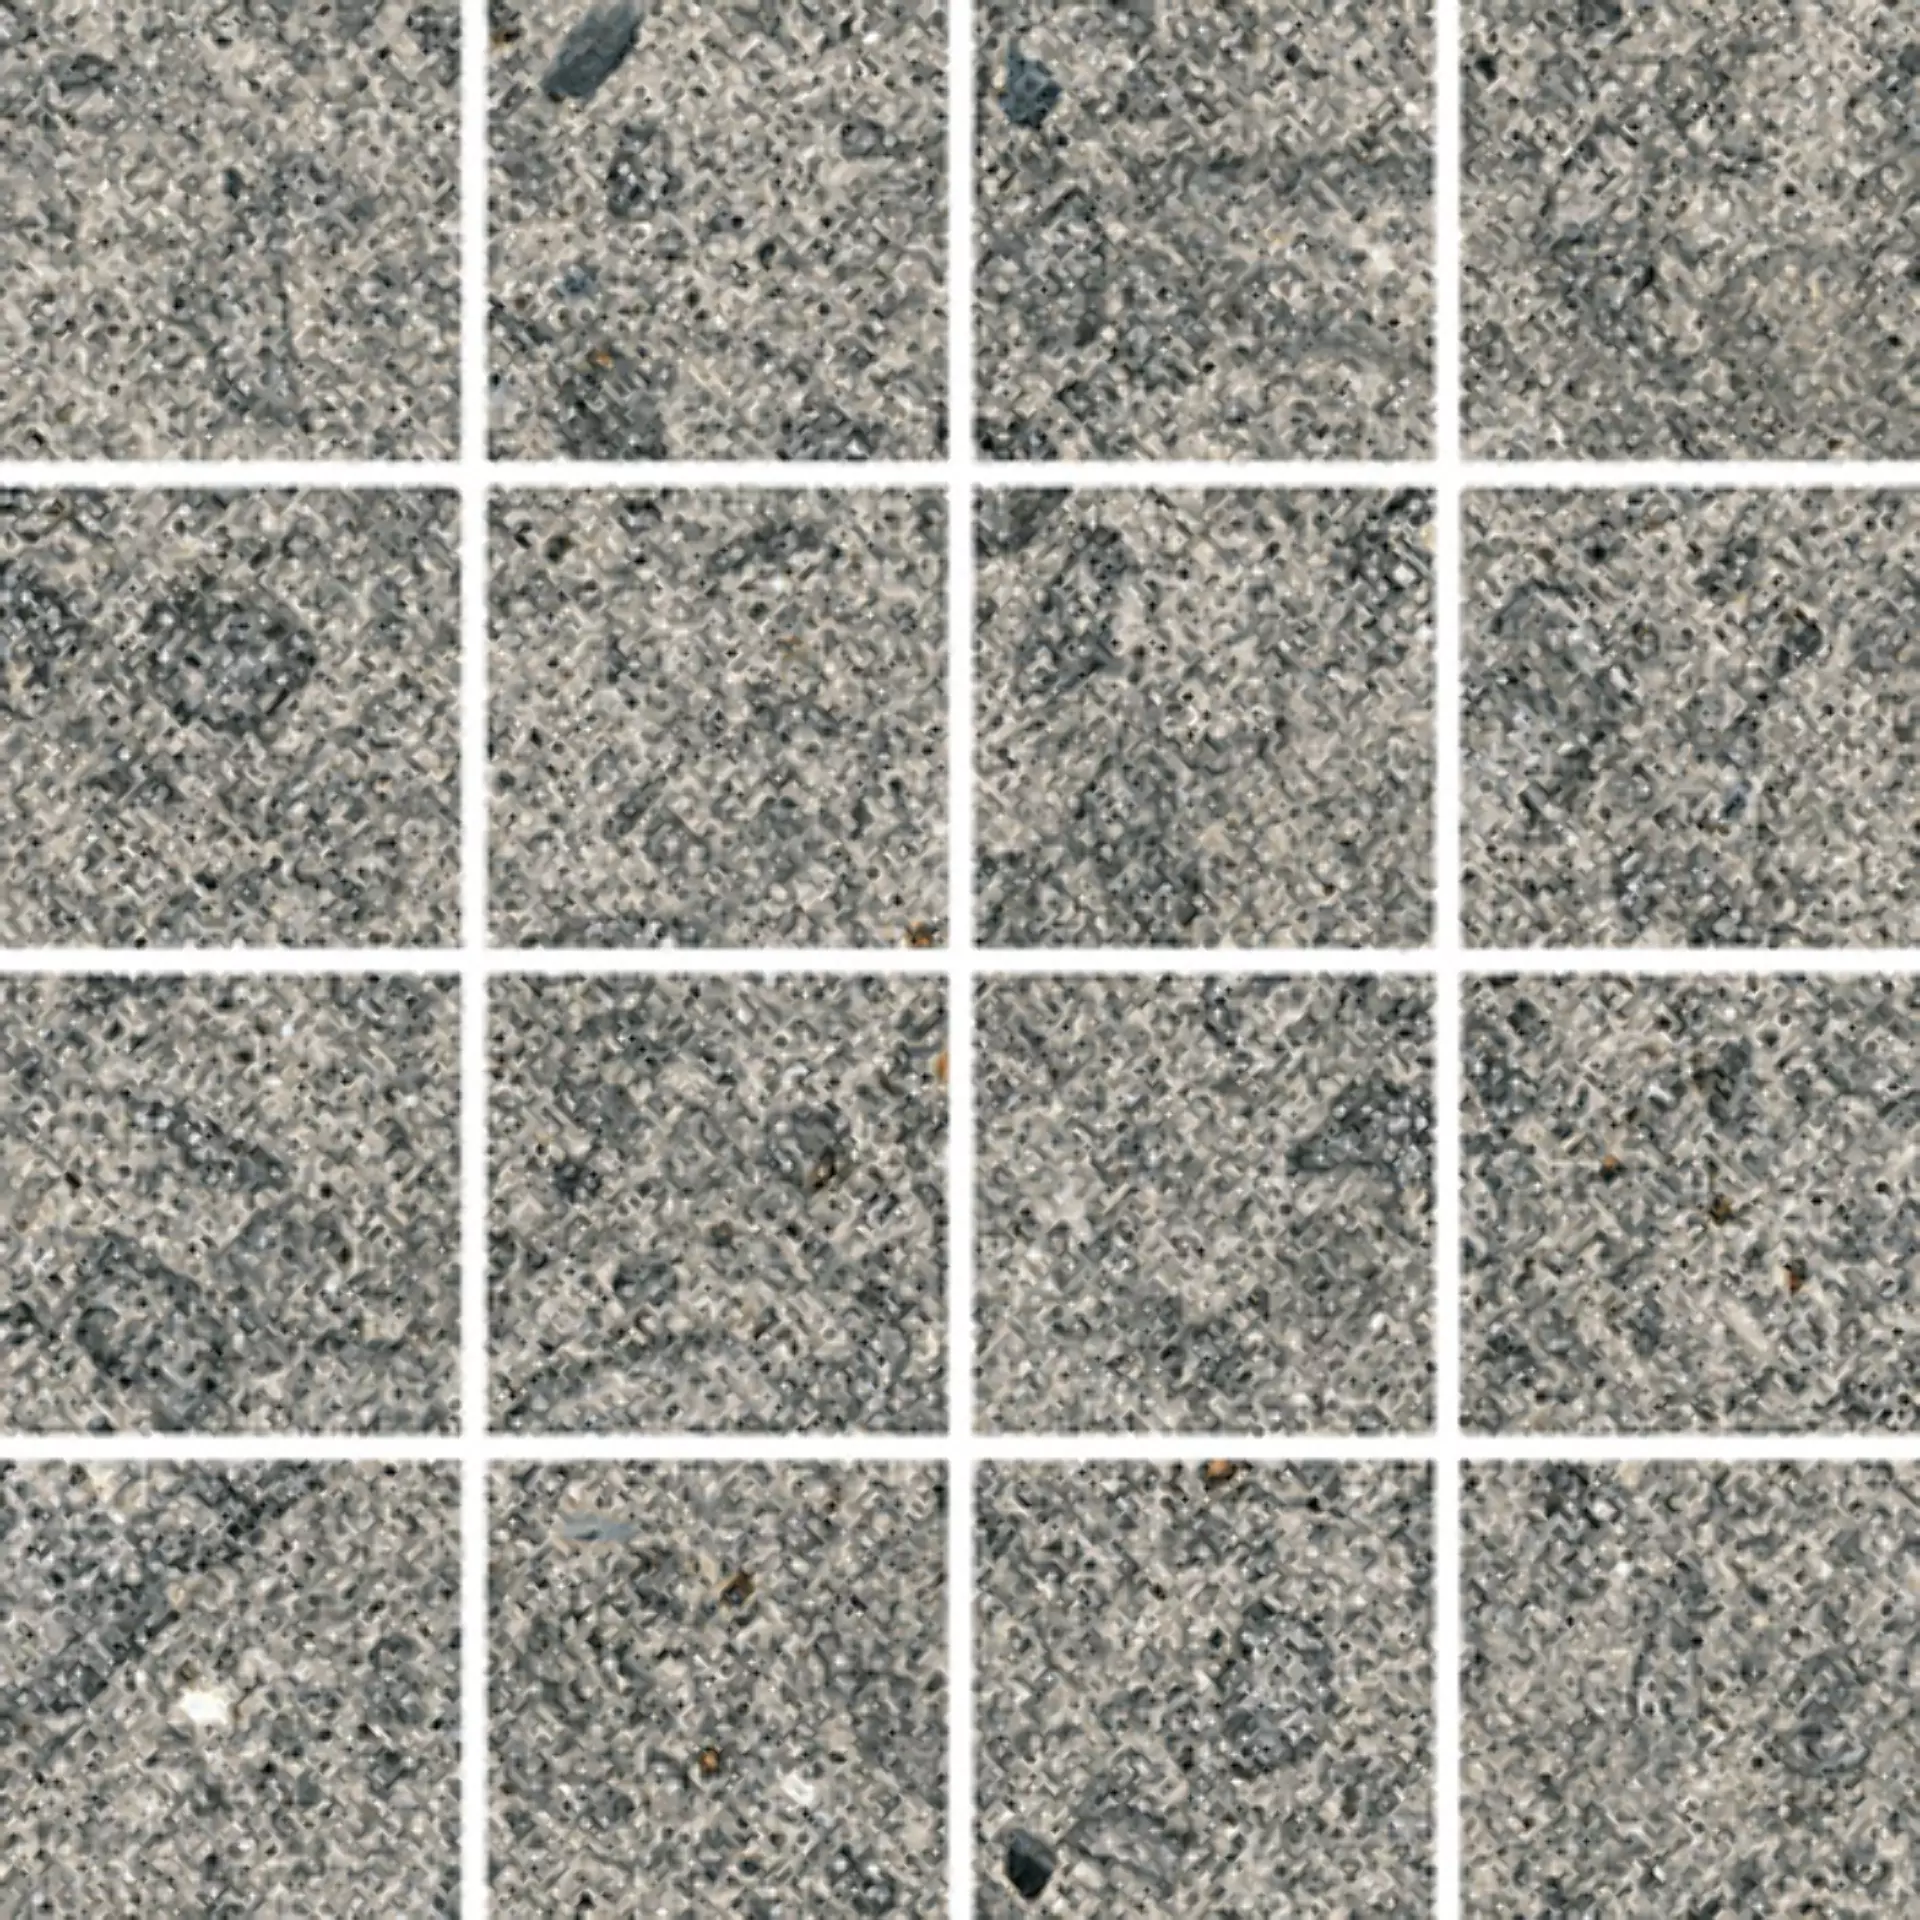 Wandfliese,Bodenfliese Villeroy & Boch Code 2 Stone Matt Stone 2013-SN60 matt 7,5x7,5cm Mosaik (7,5x7,5) rektifiziert 9mm